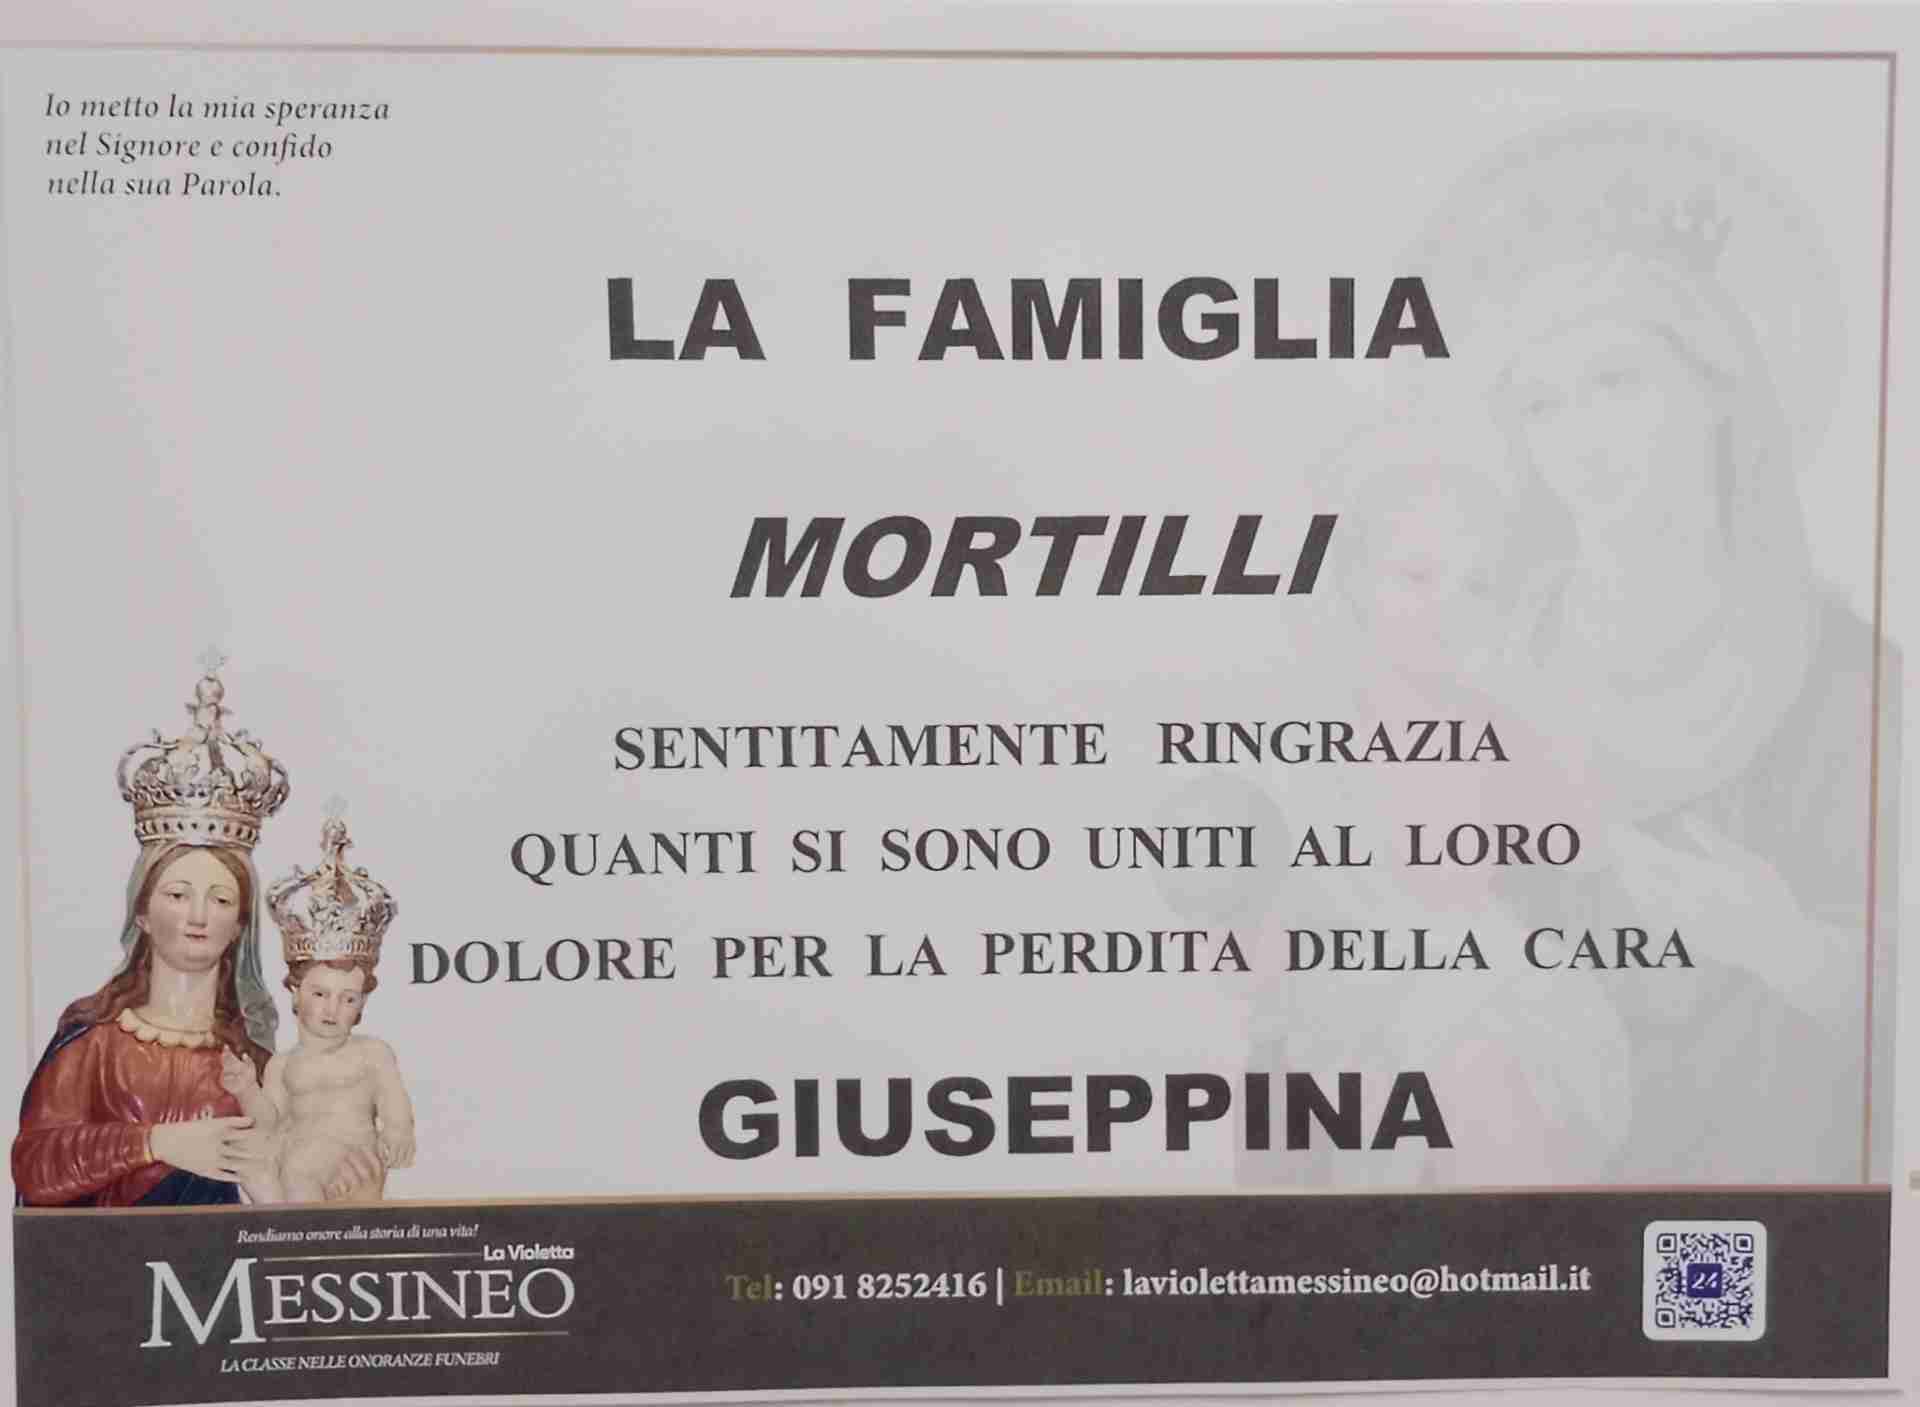 Giuseppina Mortilli